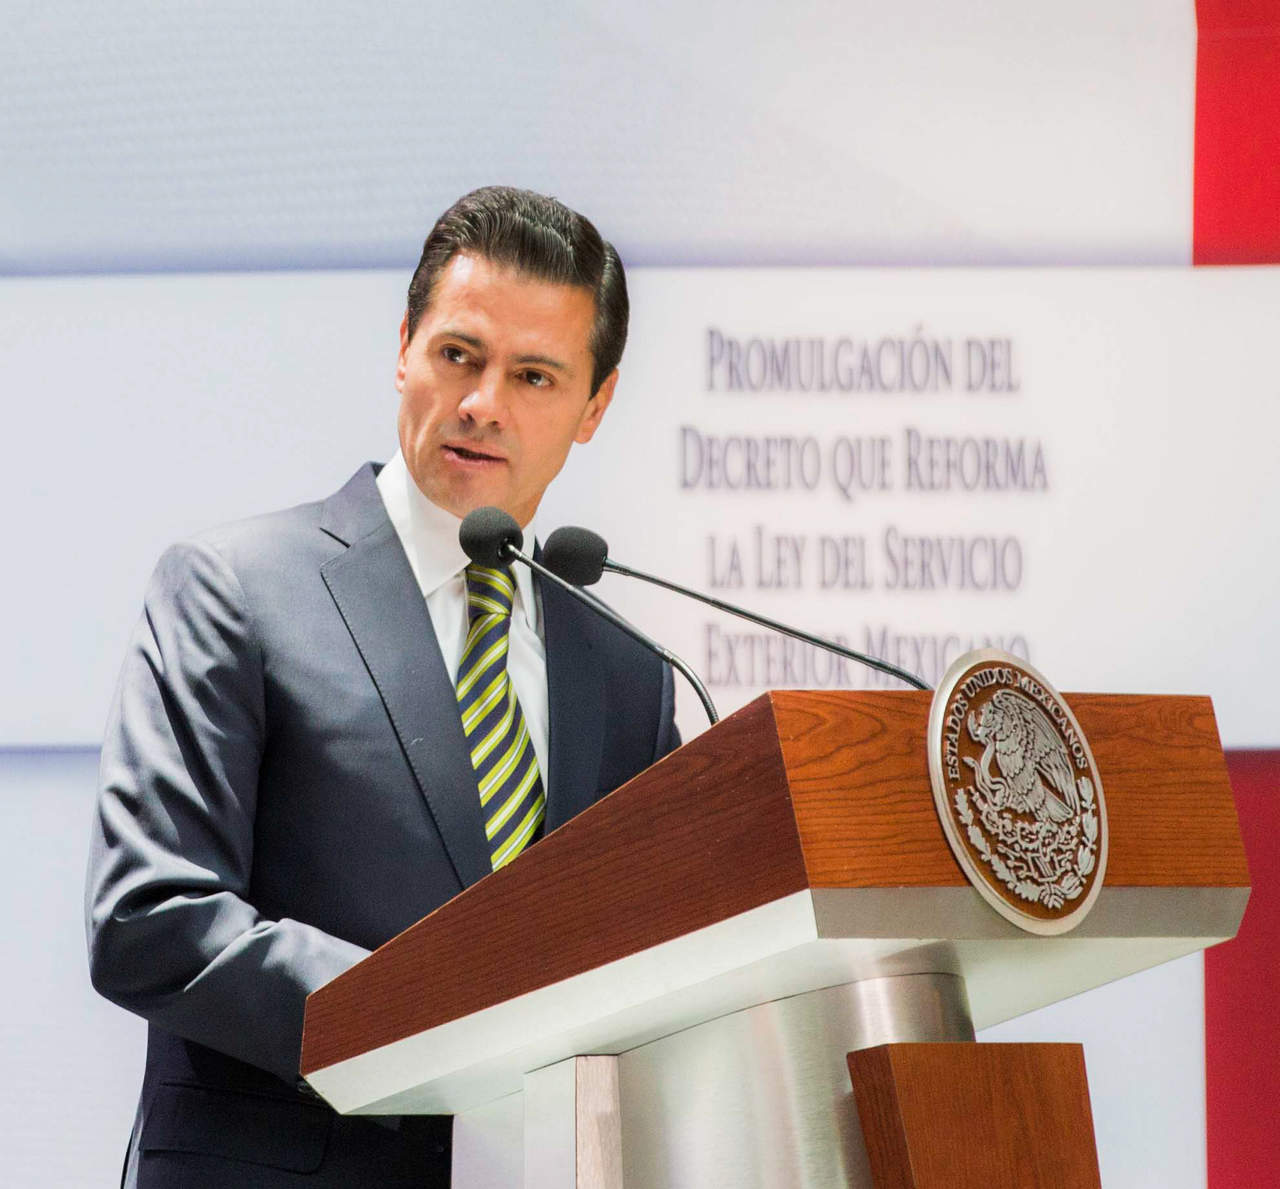  El presidente Enrique Peña Nieto felicitó, en nombre de México, a Miguel Mario Díaz-Canel por su elección como presidente del Consejo de Estado y Ministros de Cuba. (NOTIMEX)